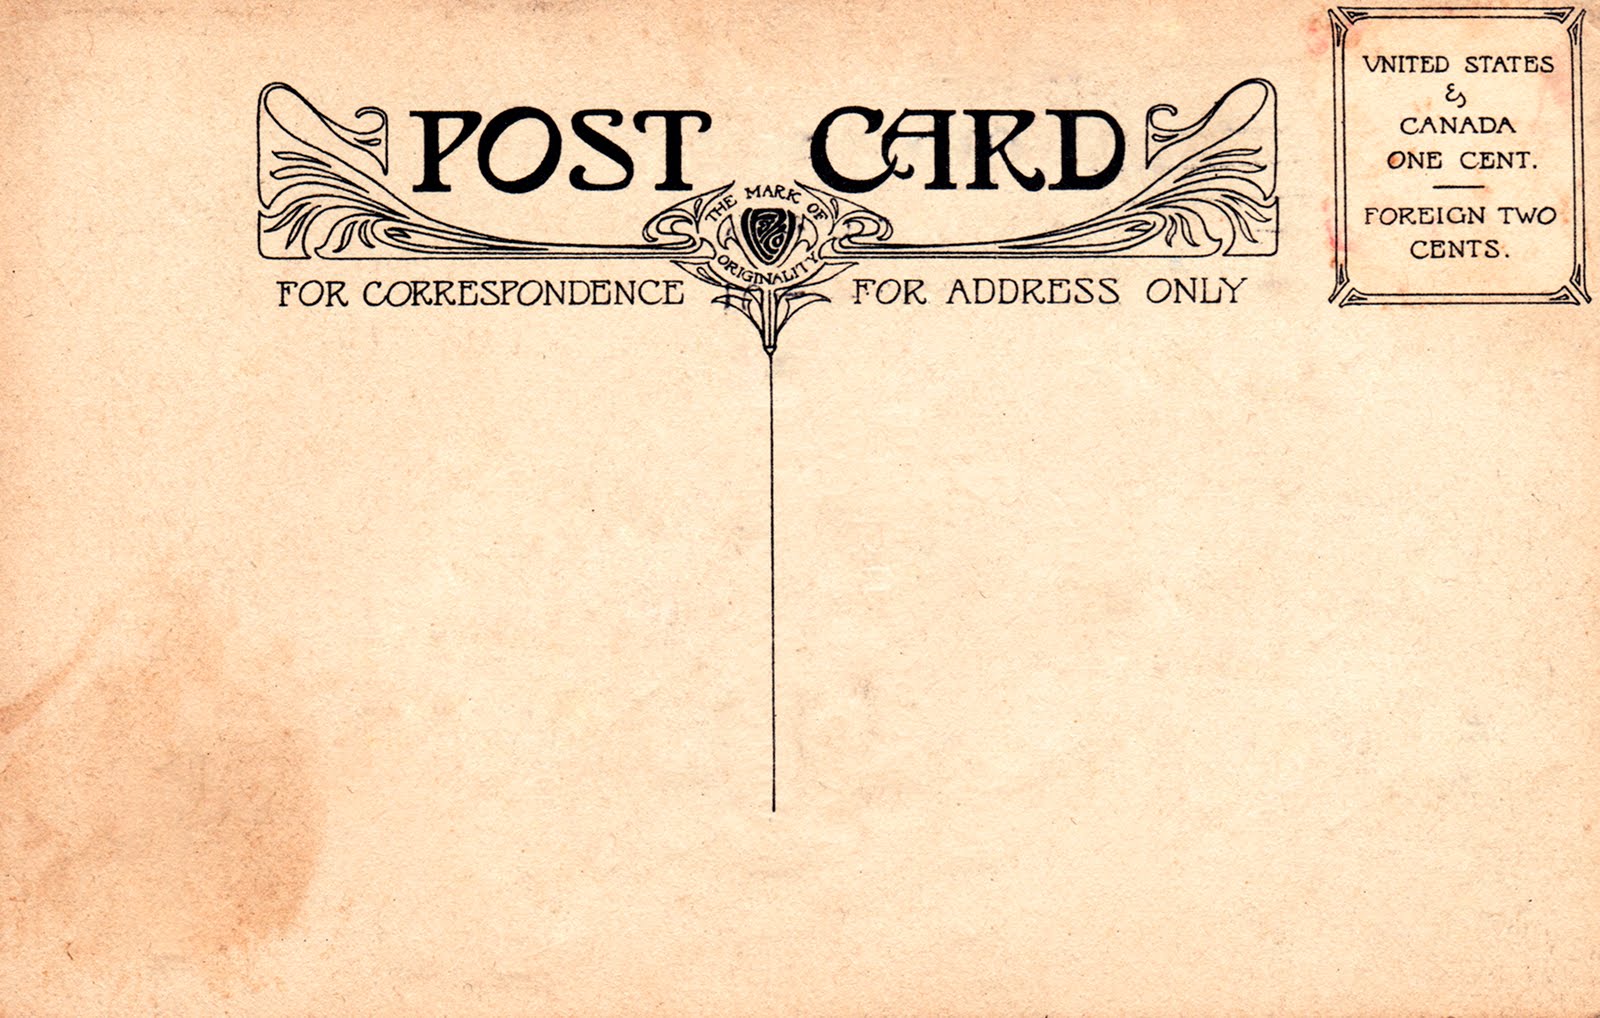 23 Retro Postcard Font Images - Vintage Postcard Back Template Inside Back Of Postcard Template Photoshop